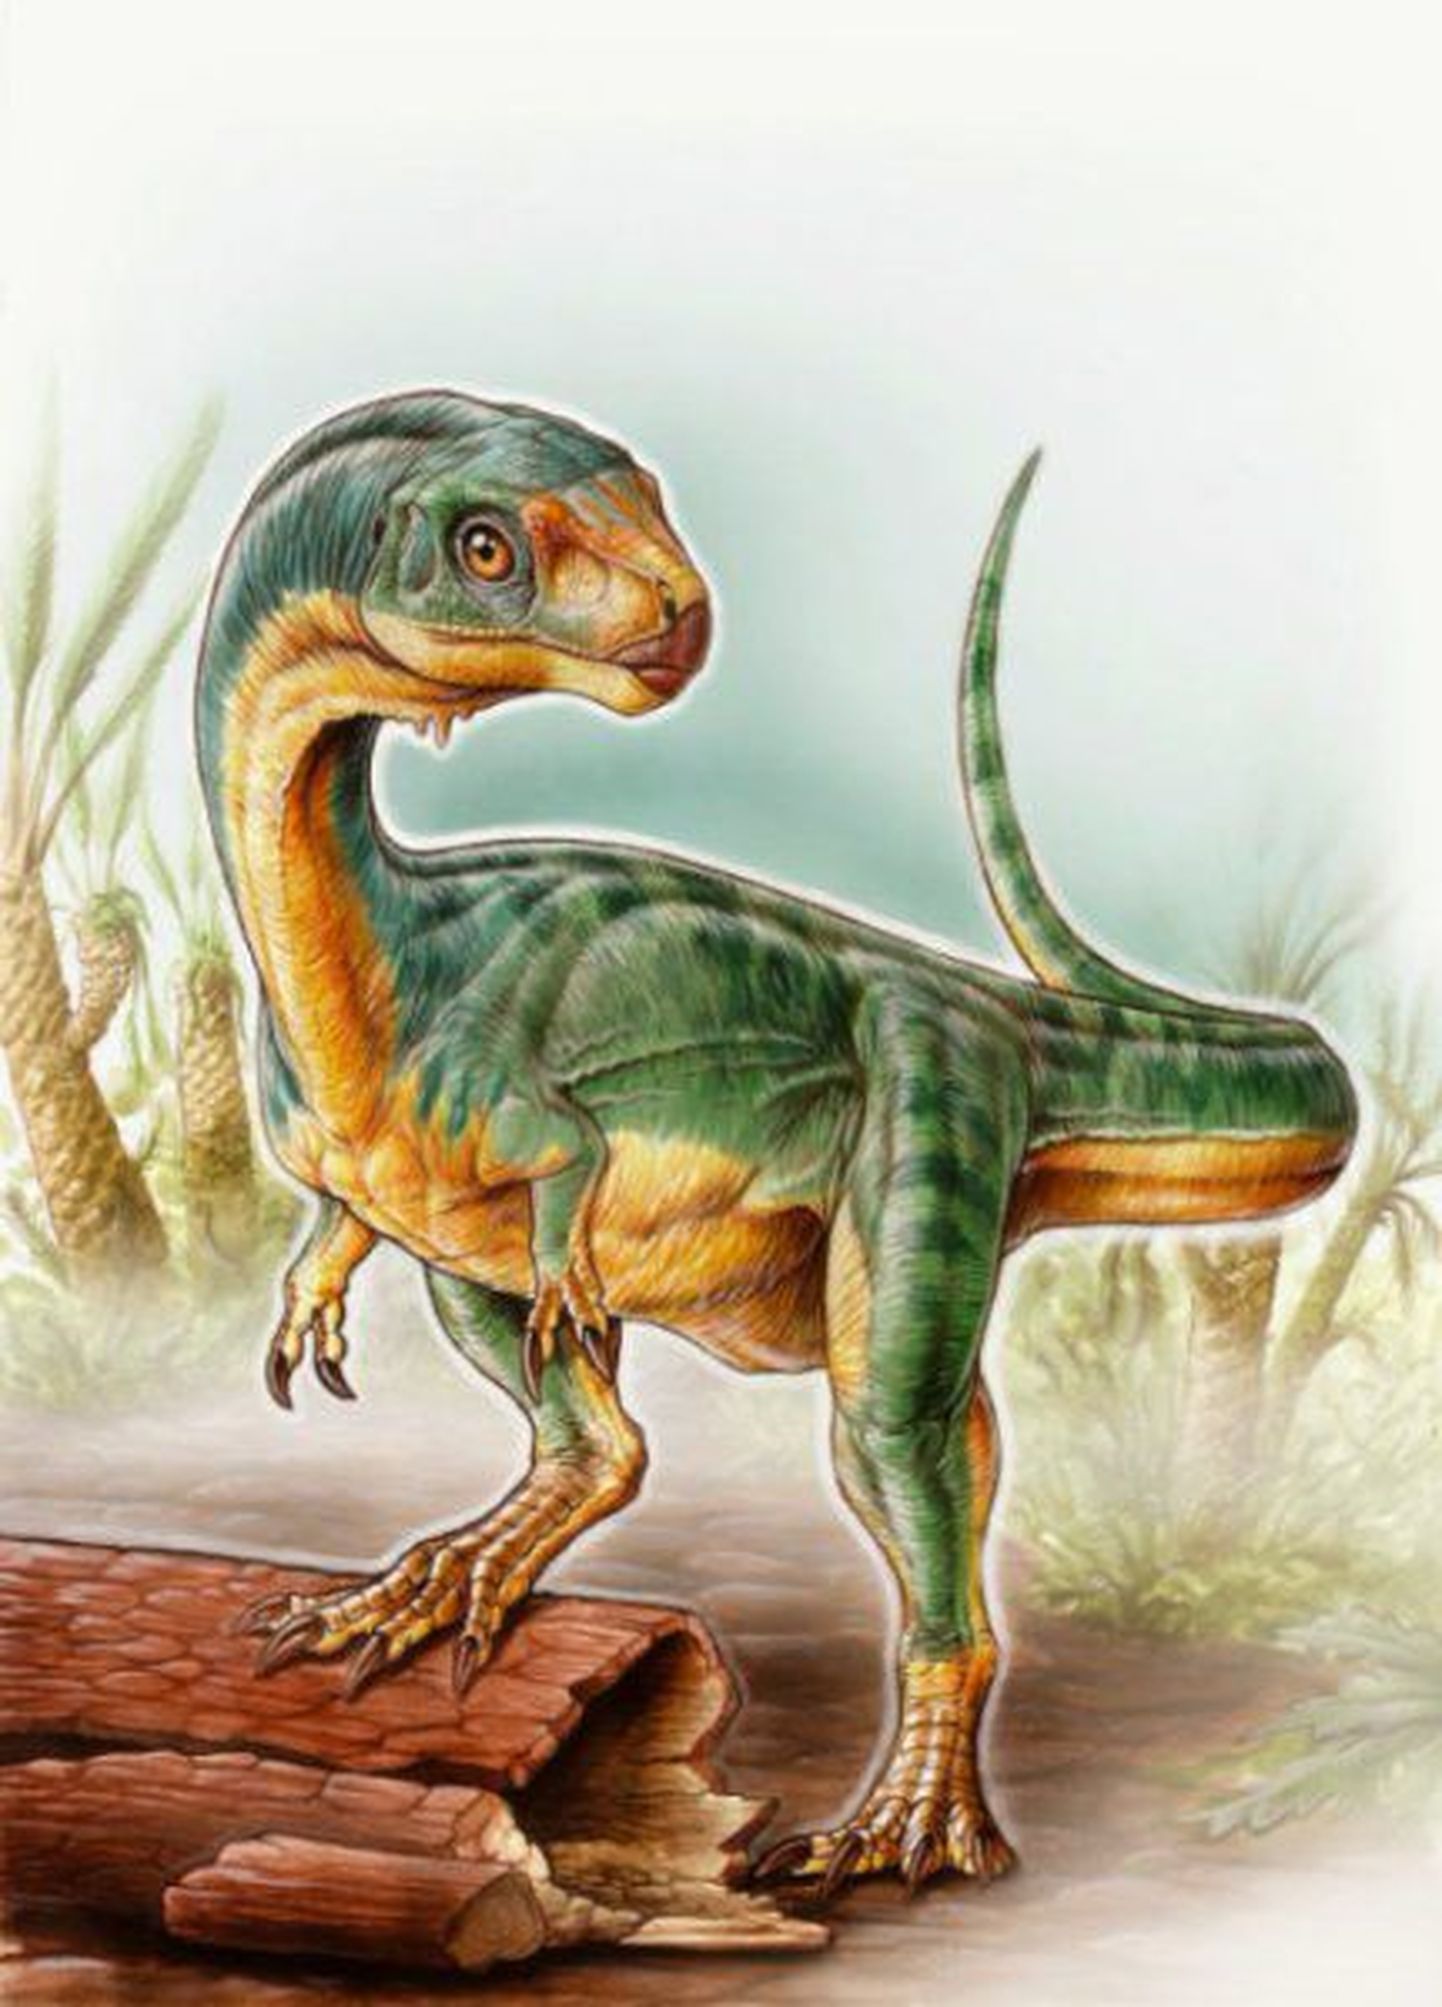 Kunstniku kujutis Frankensteini dinosauruseni tuntud Chilesaurus diegosuareziis'ist.